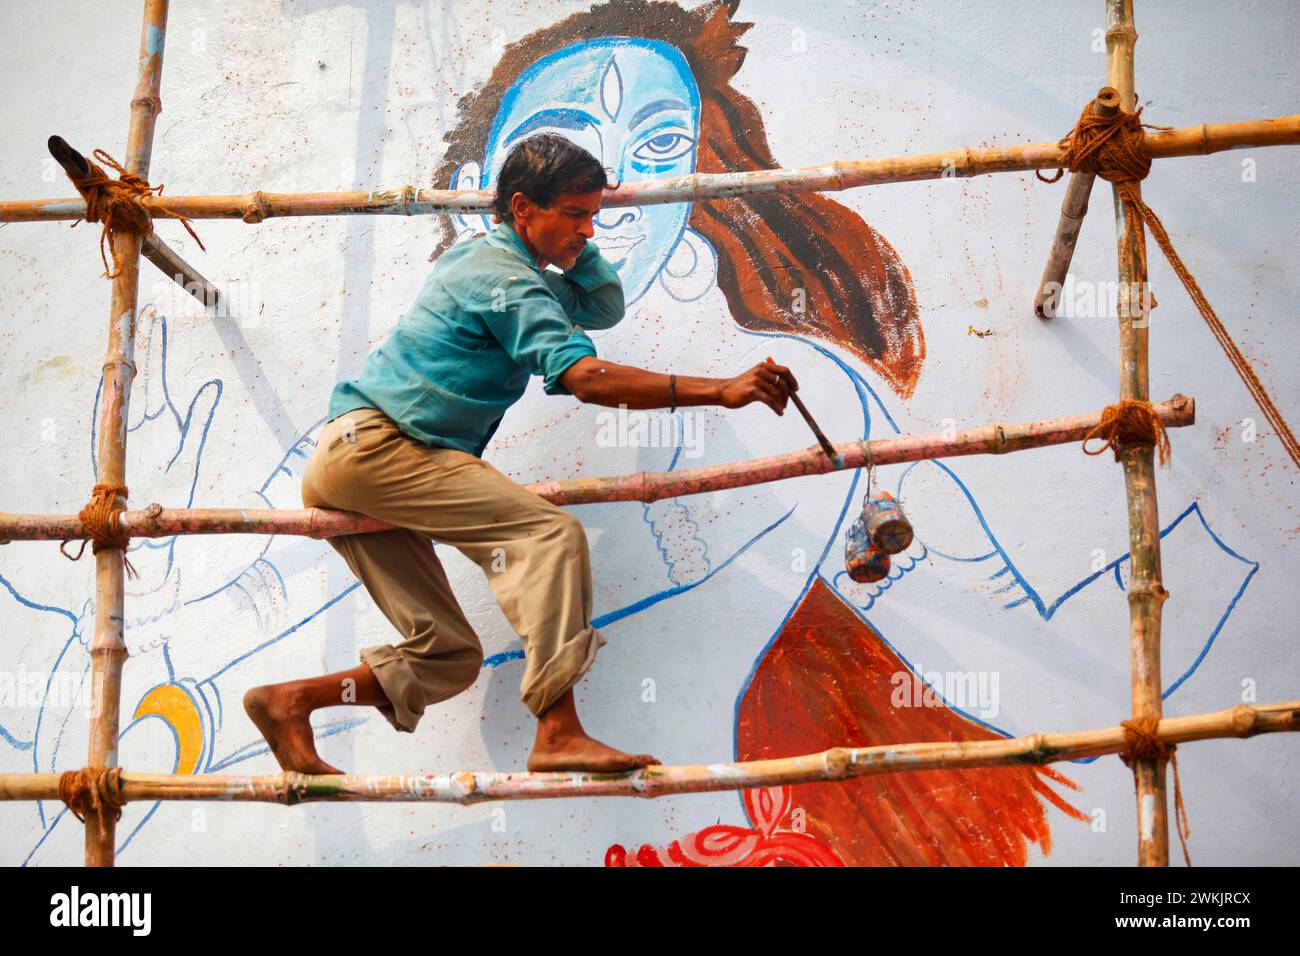 Un artista pintando la figura de la deidad india 'Shiva' en una calle en Varanasi, Uttar Pradesh, India. Foto de stock